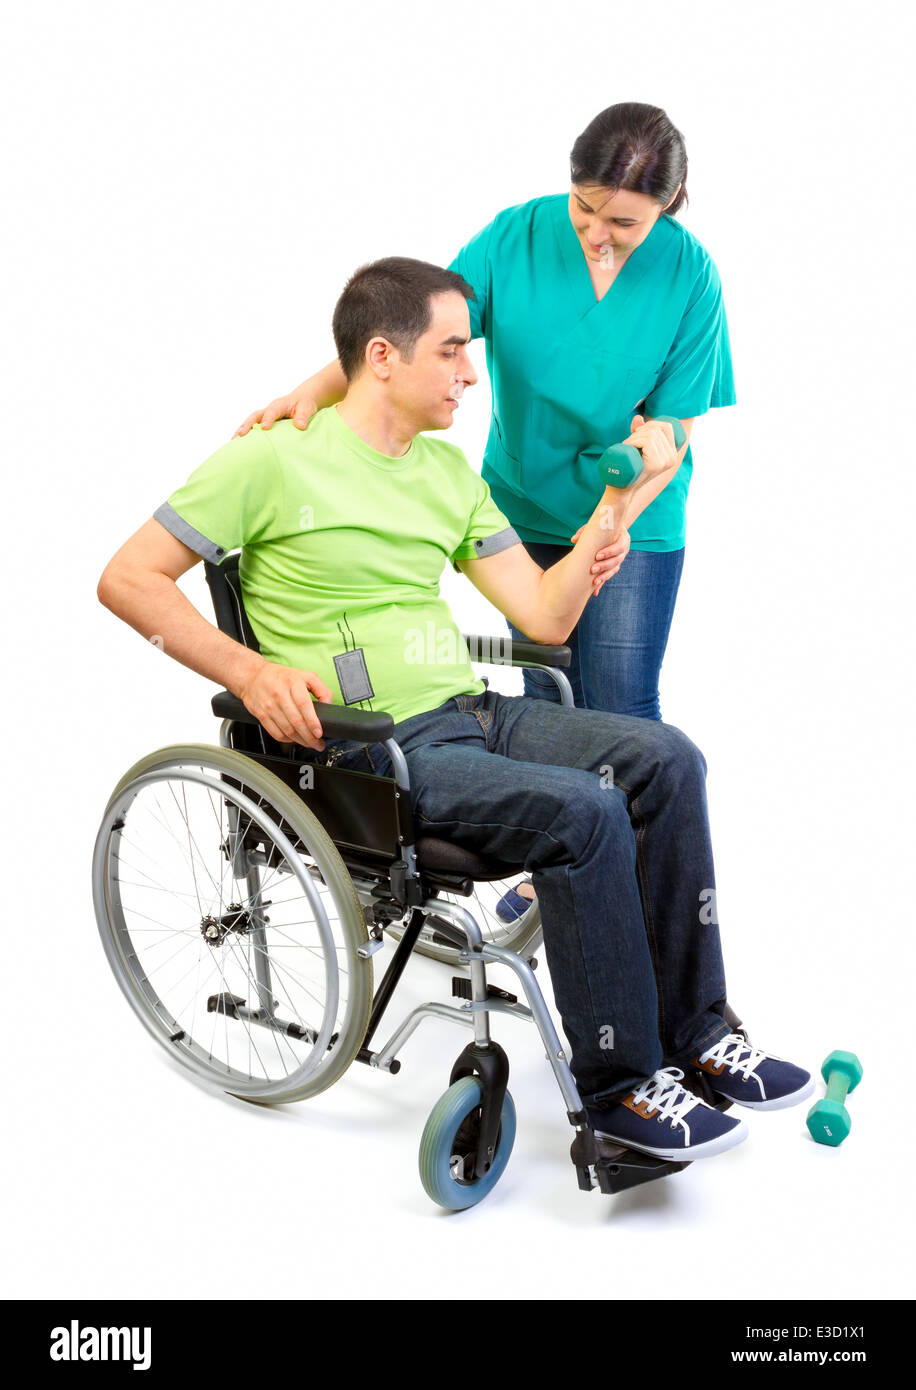 Physiothérapeute travaille avec le patient dans les mains de levage de poids. Les jeunes adultes en fauteuil roulant. Banque D'Images